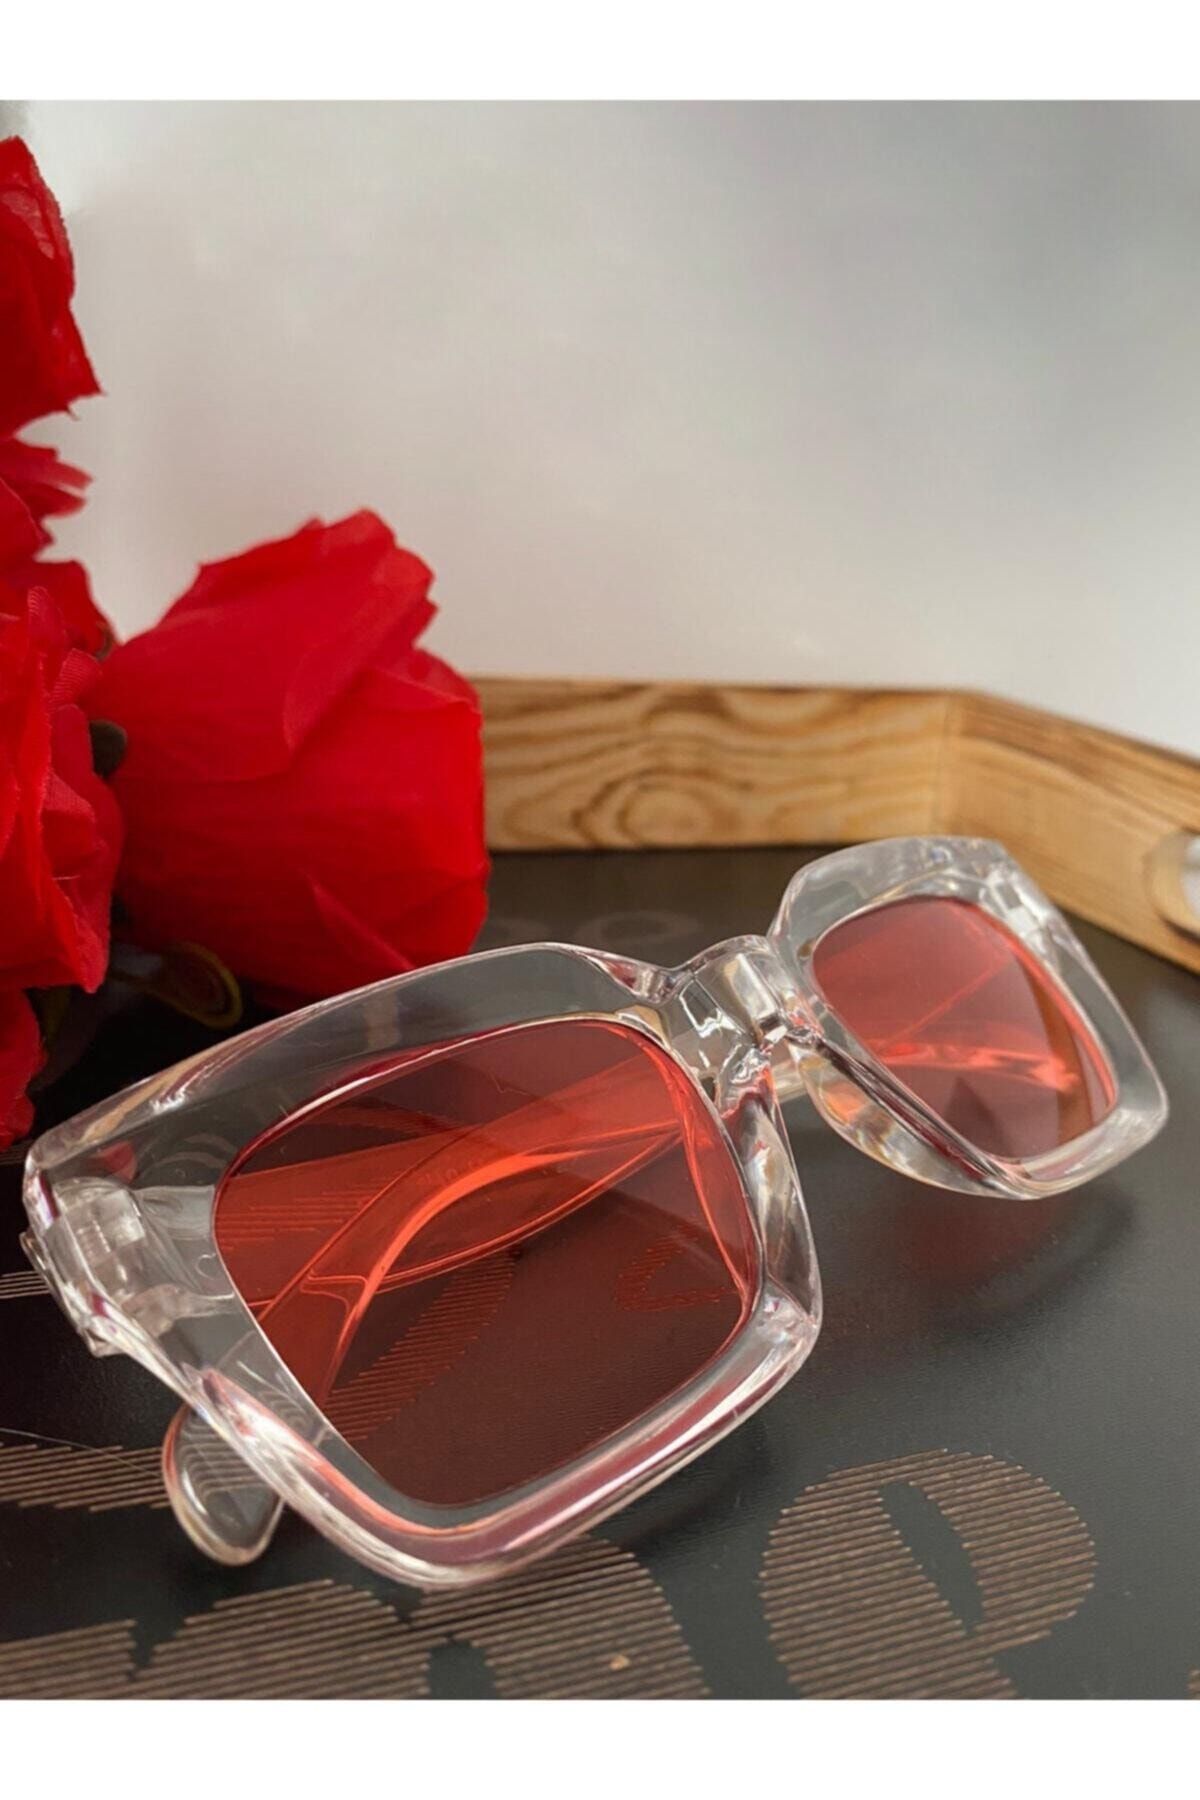 Mathilda Aksesuar Mia Kalın Çerçeveli Tasarım Gözlük Şeffaf Çerçeve Kırmızı Cam